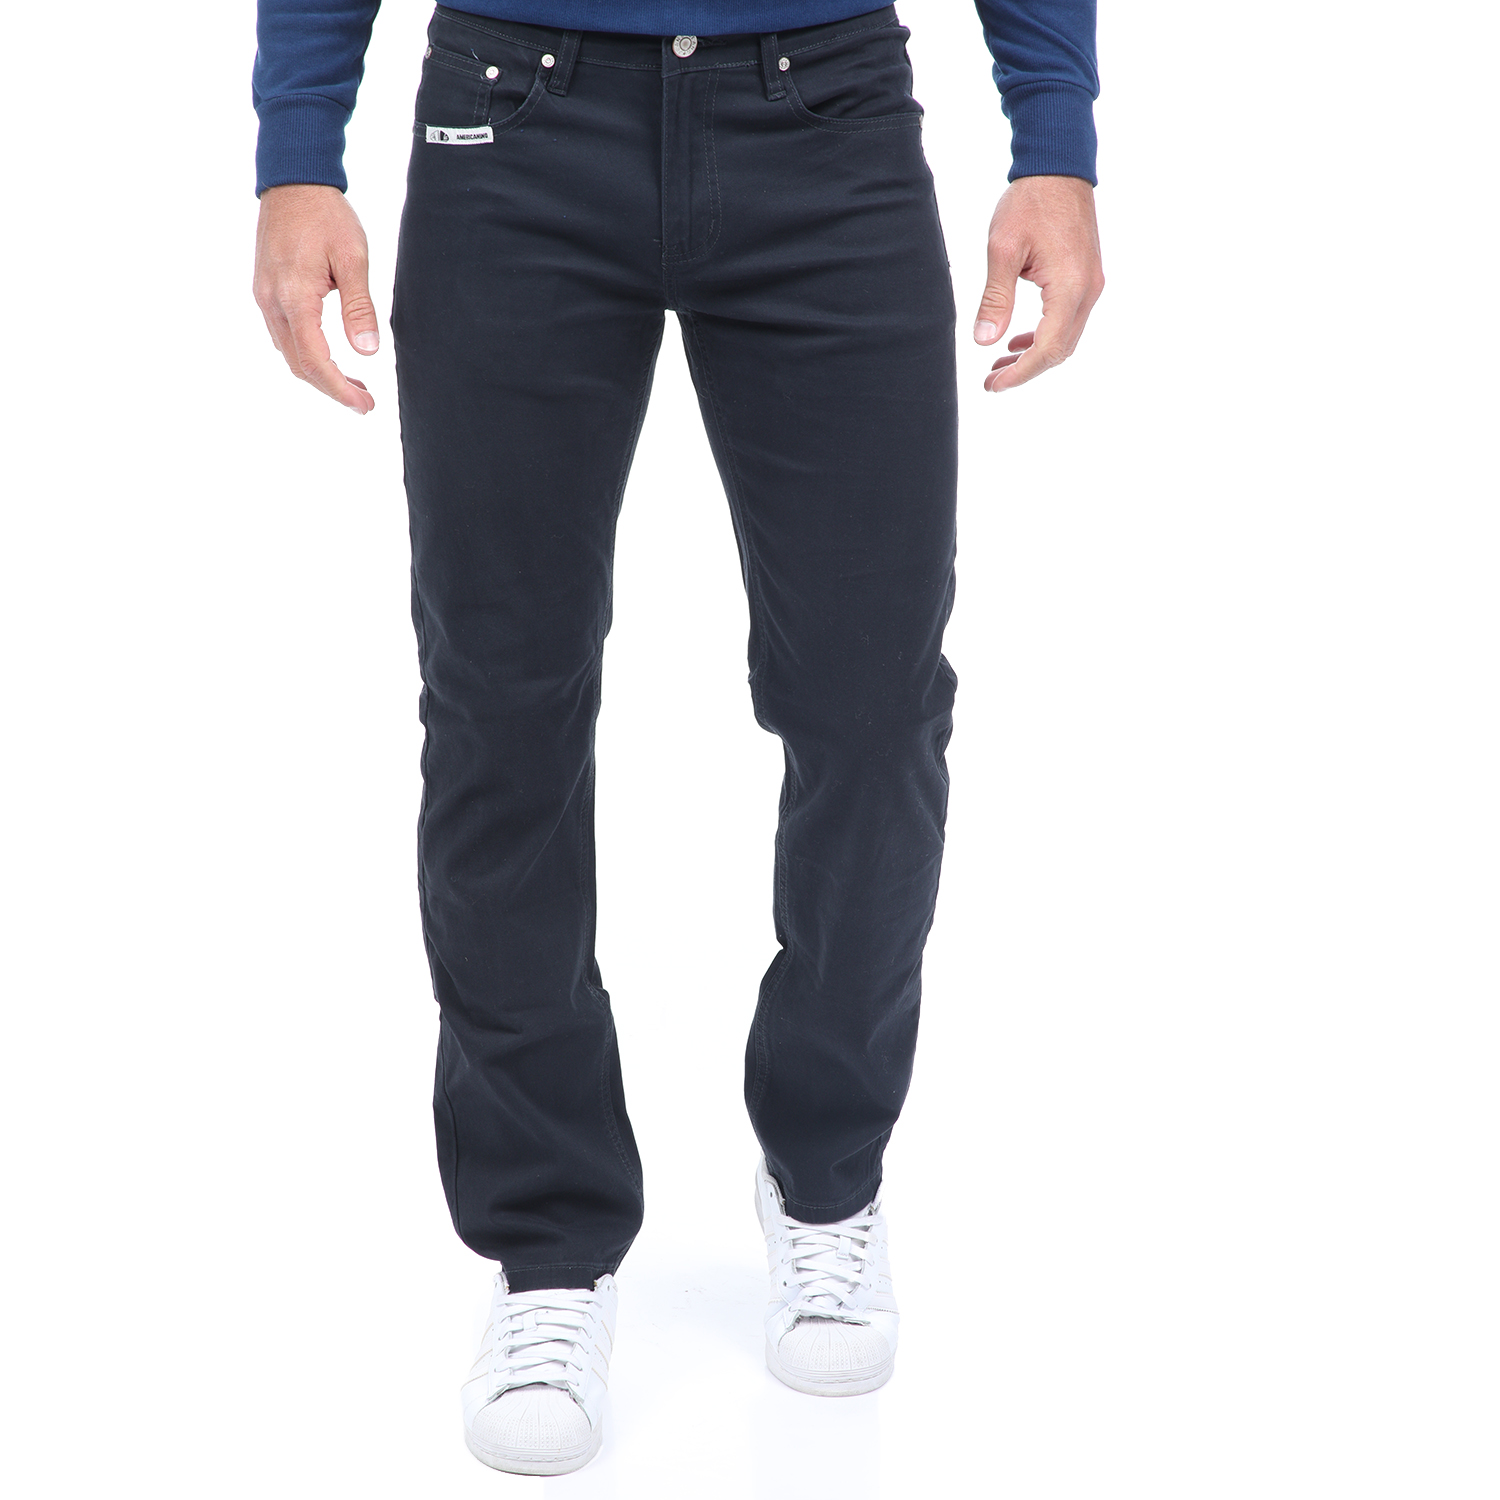 Ανδρικά/Ρούχα/Παντελόνια/Ισια Γραμμή AMERICANINO - Ανδρικό jean παντελόνι AMERICANINO μπλε